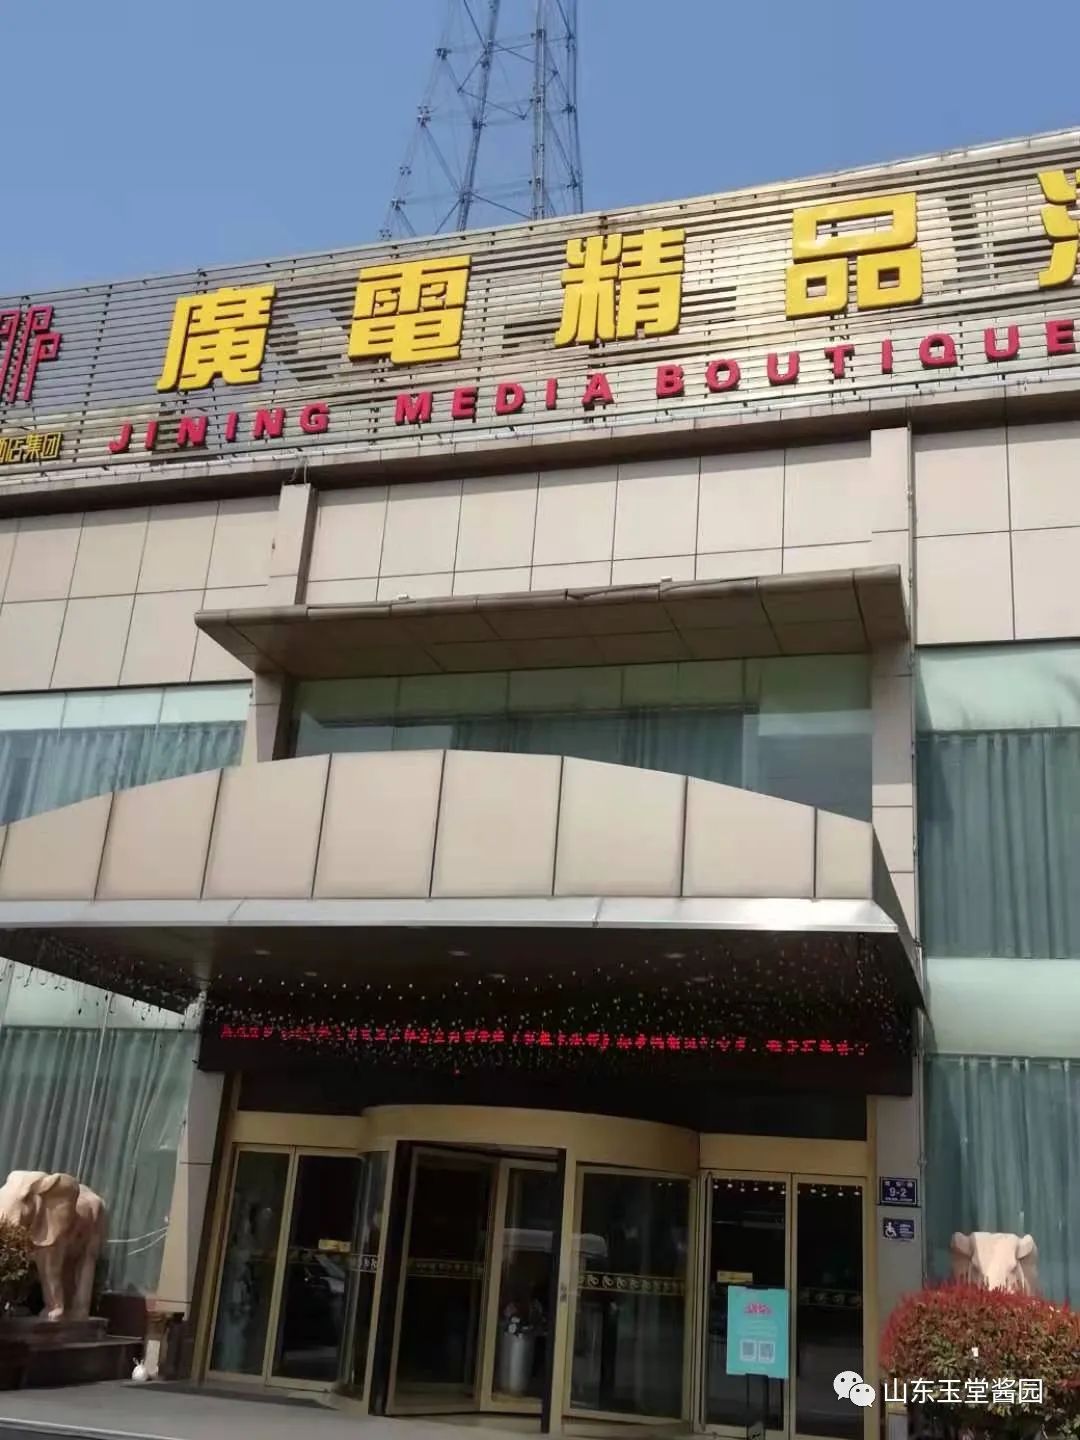 2022广州白天鹅宾馆·玉堂春暖餐厅美食餐厅,我自己也是忠实的玉堂粉一枚...【去哪儿攻略】